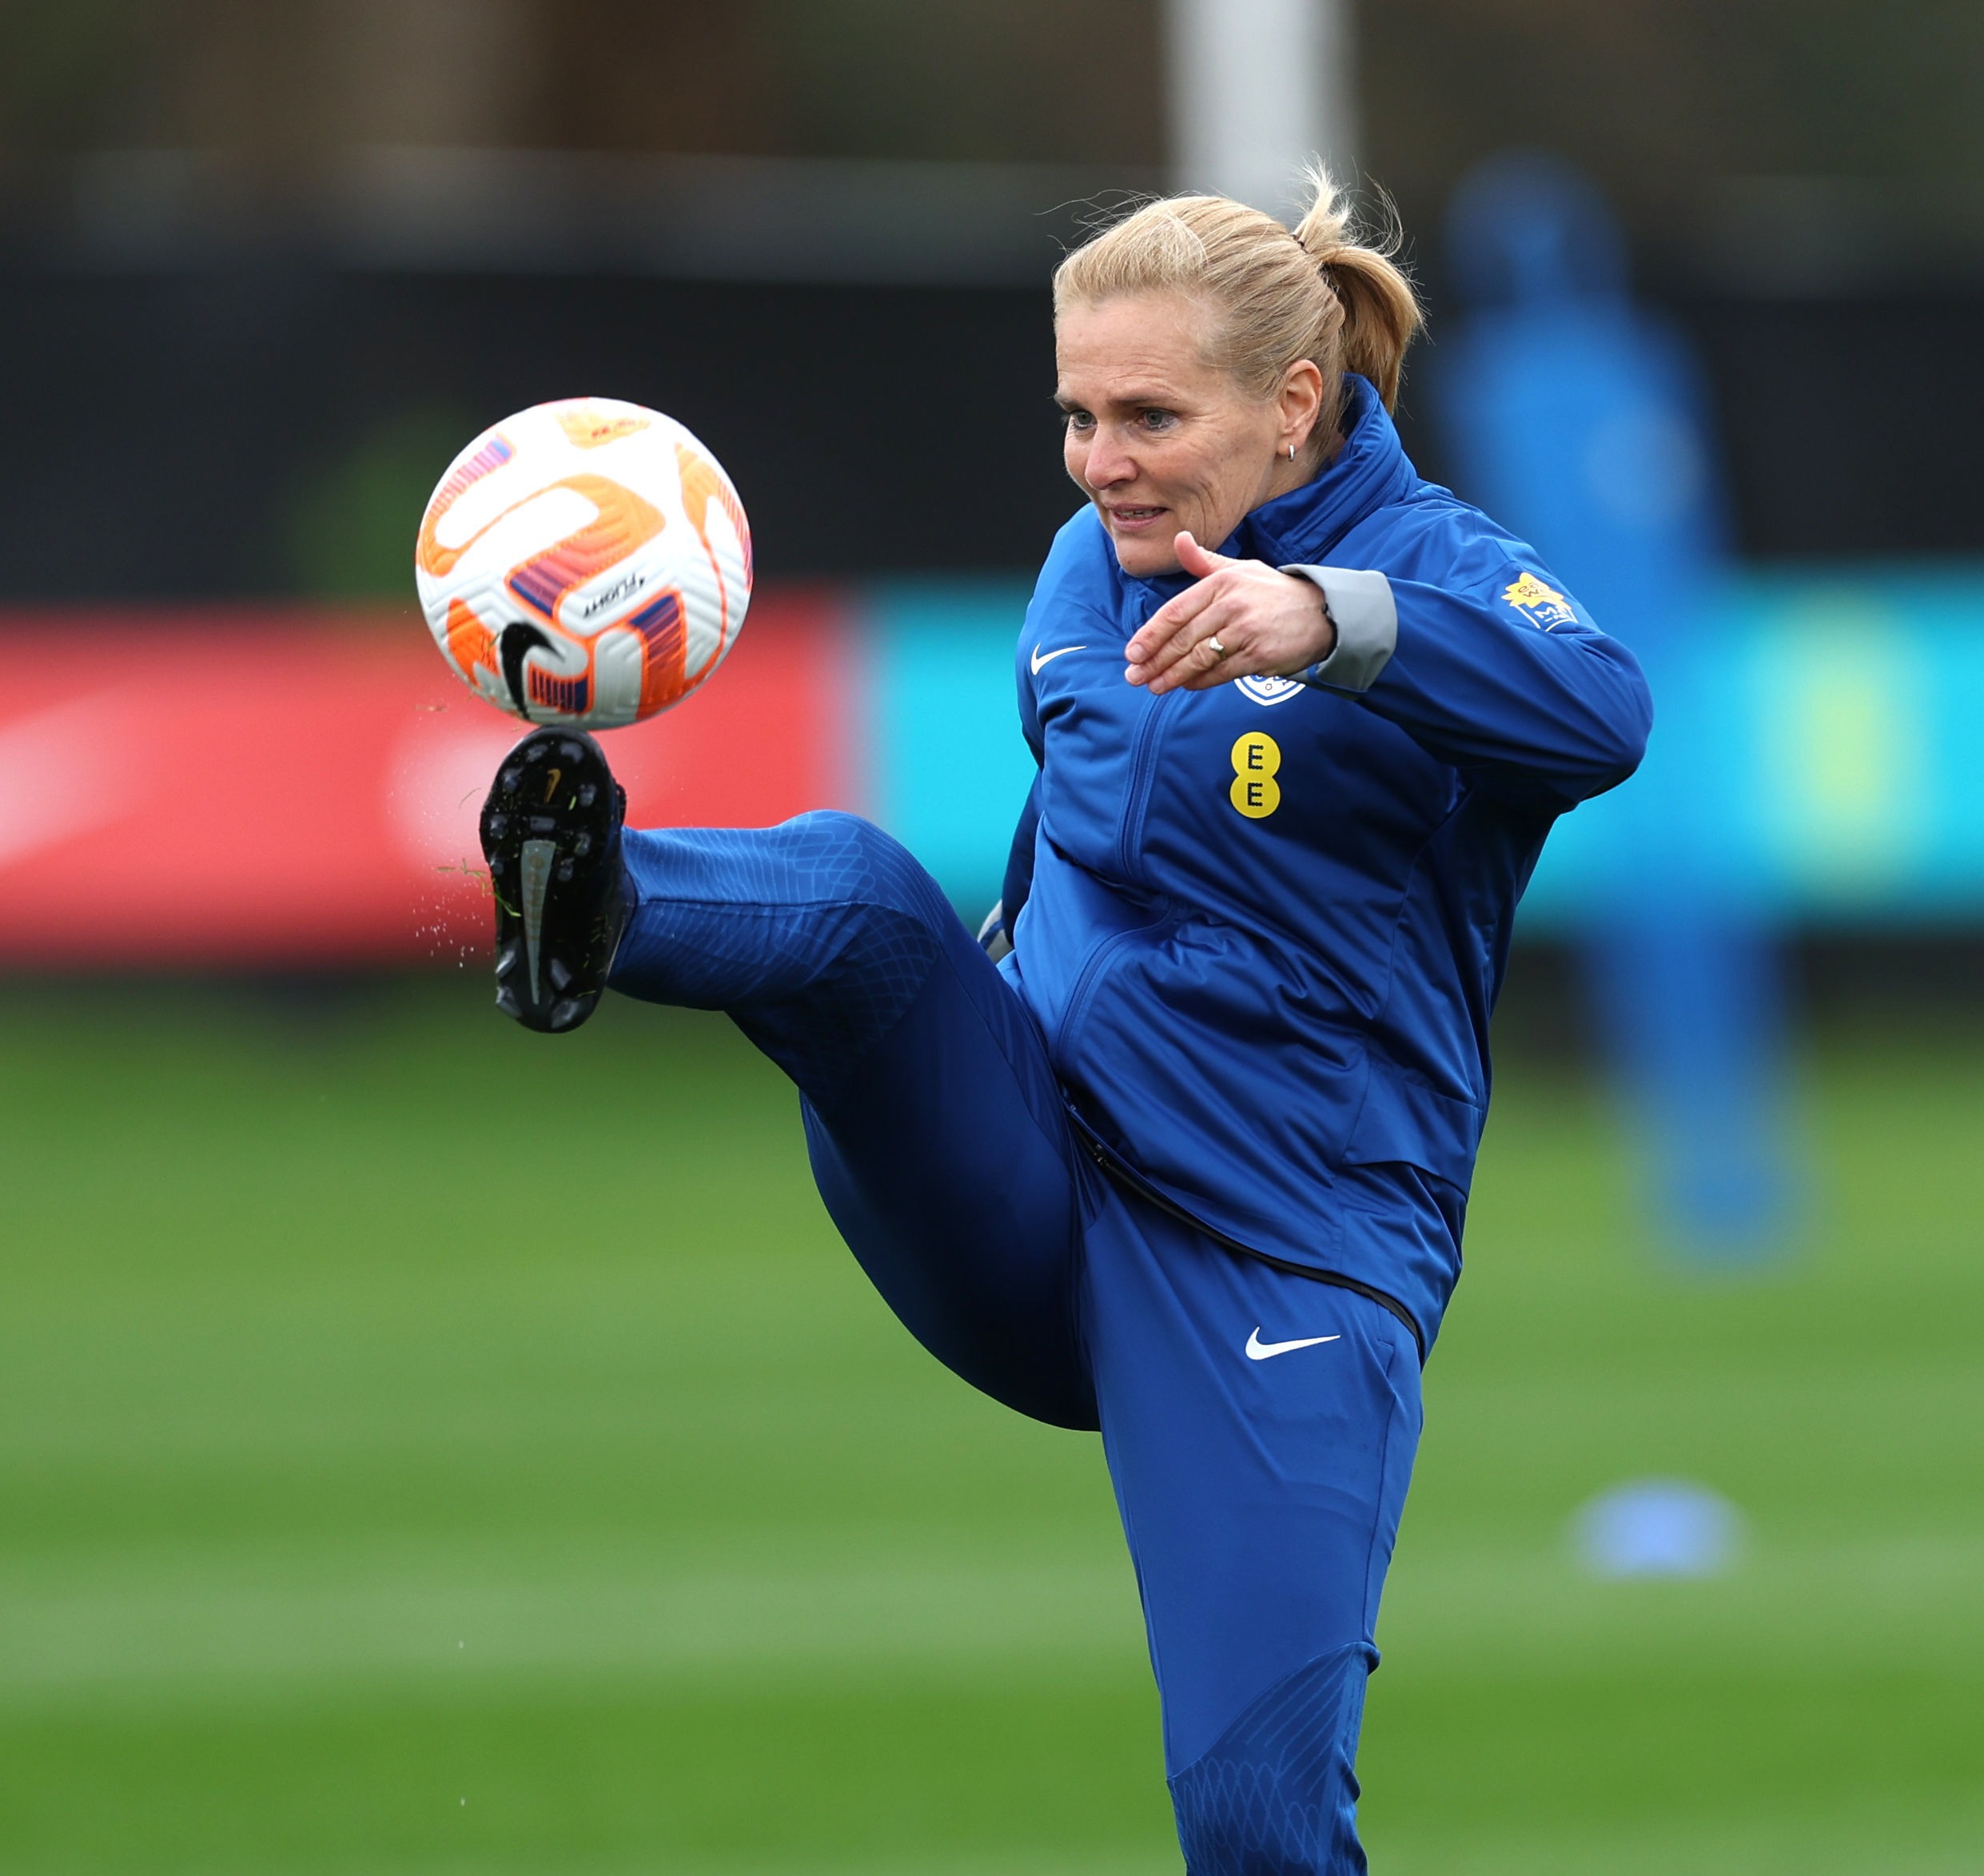 Sarina Wiegman führte die Niederlande ins WM-Finale 2019, bevor sie die Leitung der Lionesses übernahm